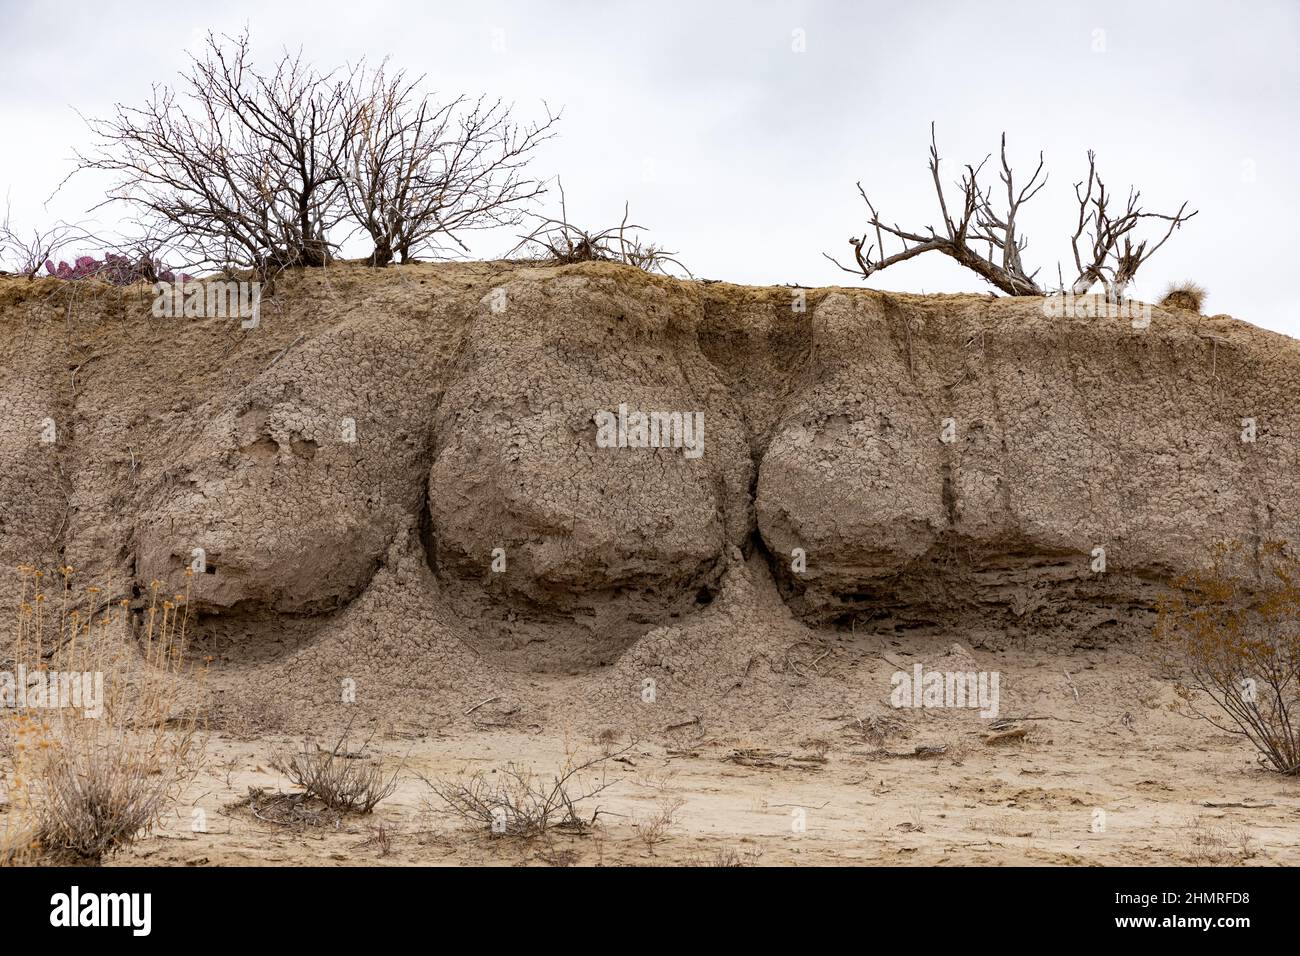 Un mur d'arroyo montre une coupe transversale de tuyauterie de sol. Banque D'Images